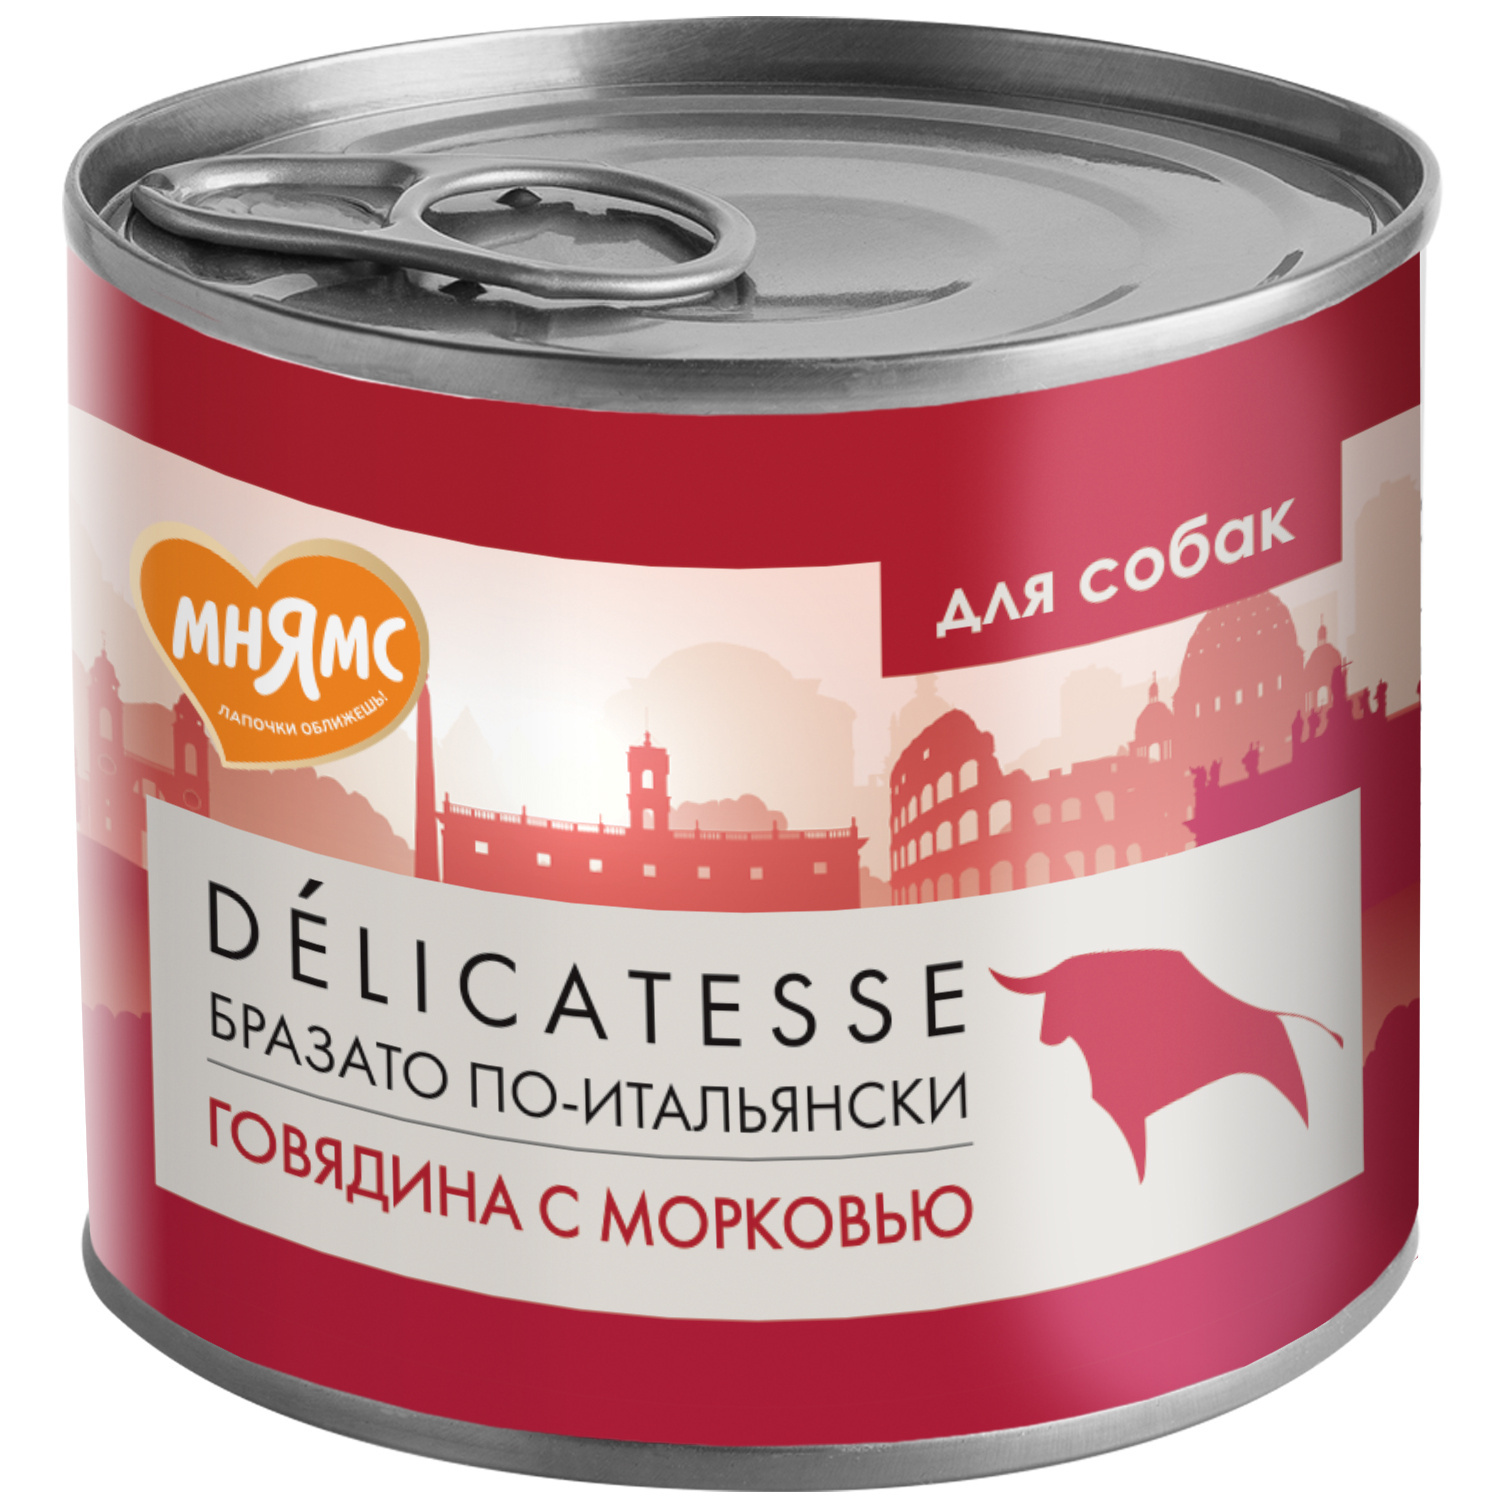 Мнямс Мнямс консервы Бразато по-итальянски для собак всех пород из говядины с морковью (200 г) мнямс мнямс консервы турдакен по британски для собак всех пород из индейки с уткой 400 г